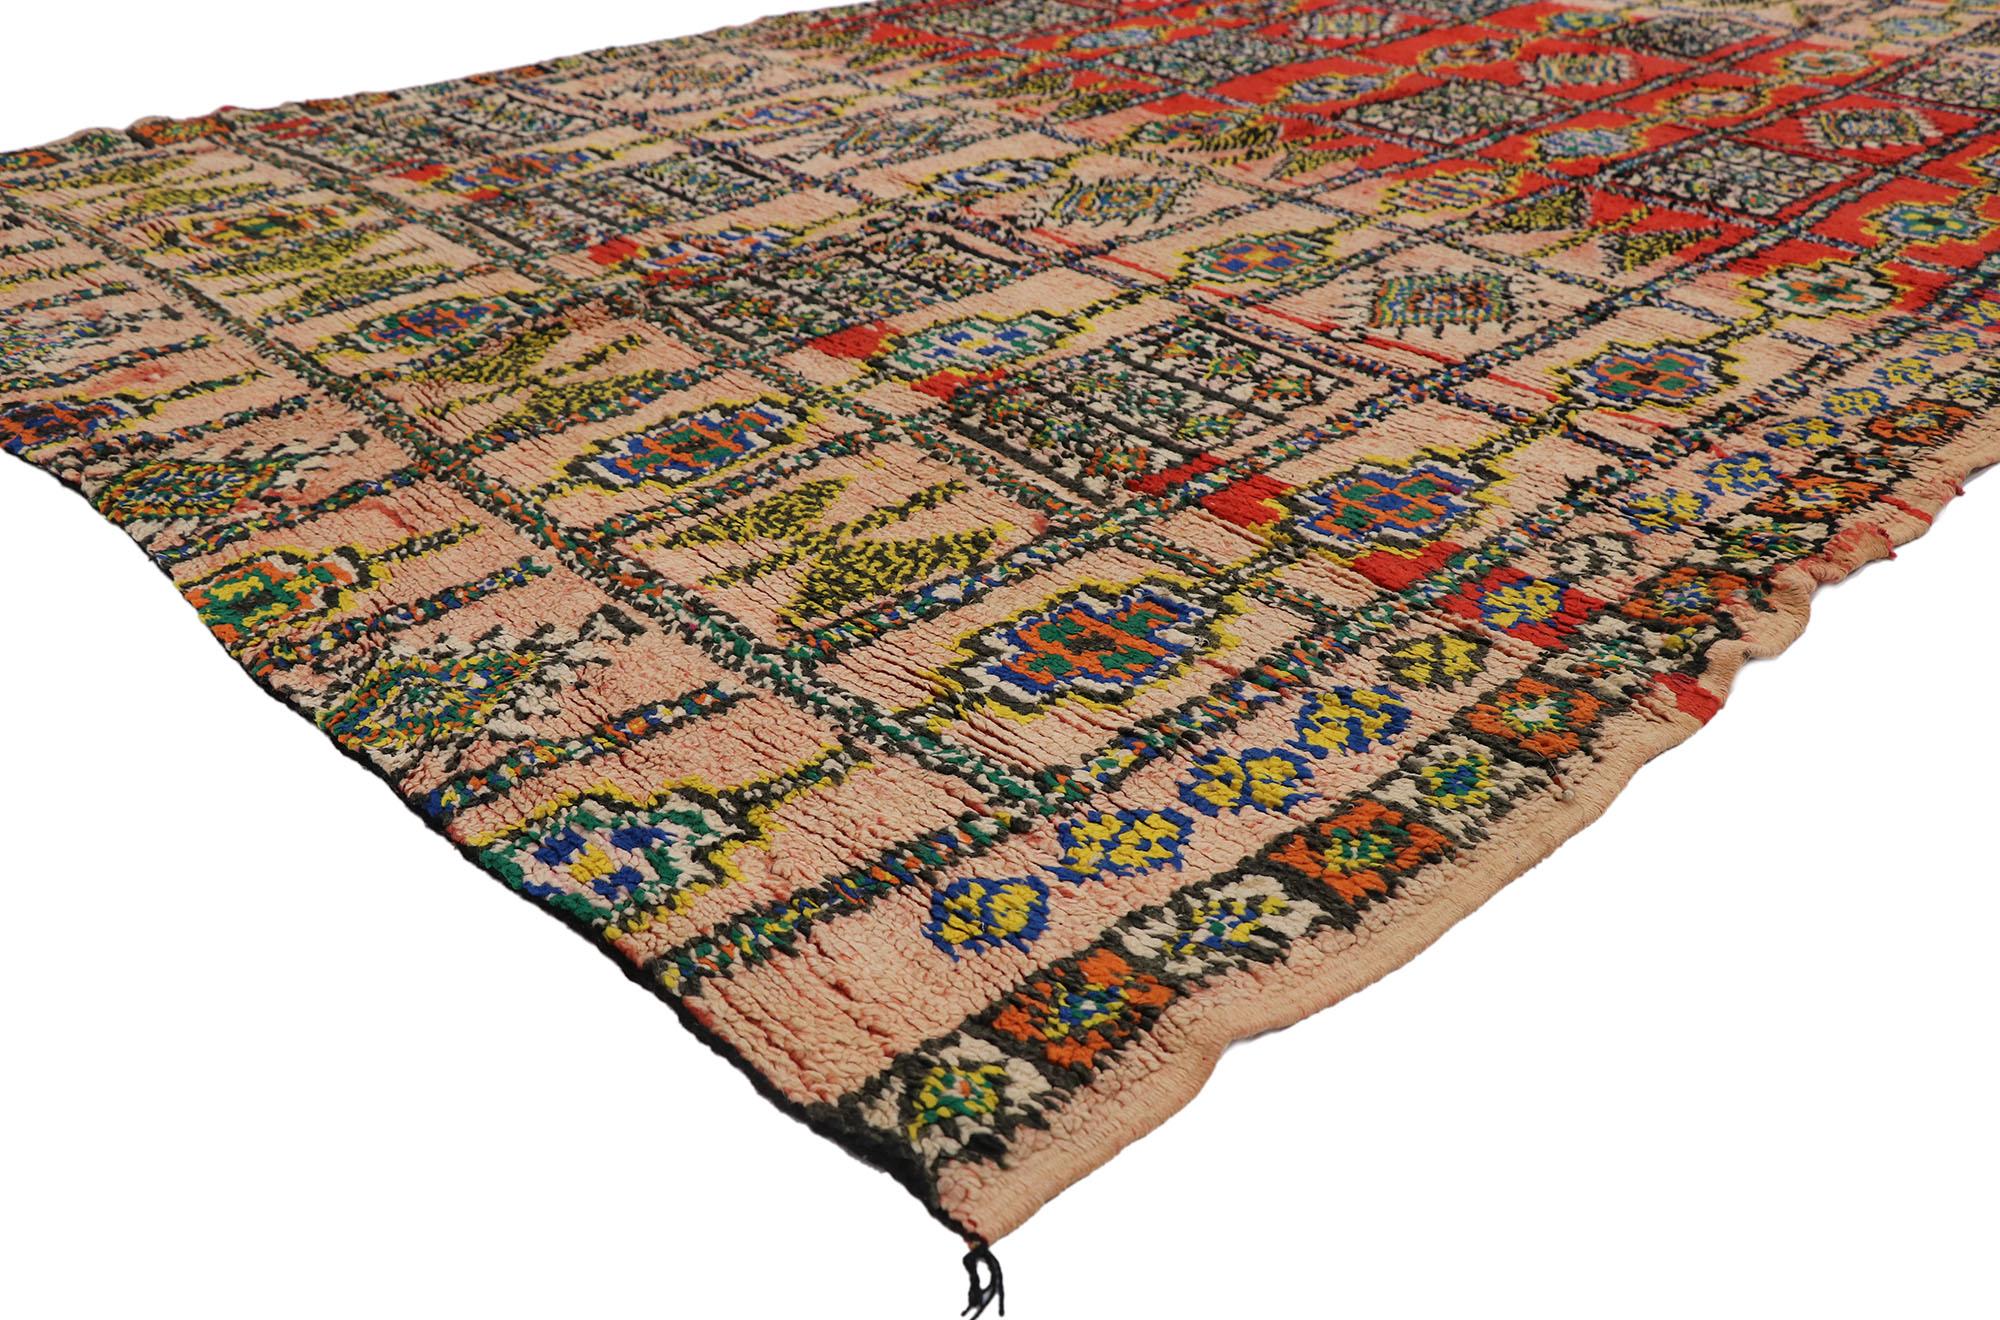 21462 Tapis marocain Vintage Berber Boujad, 06'00 x 09'09.
Le Boho By rencontre le Wabi-Sabi dans ce tapis berbère marocain vintage en laine nouée à la main. Le symbolisme ésotérique et la palette de couleurs vibrantes tissés dans cette pièce se